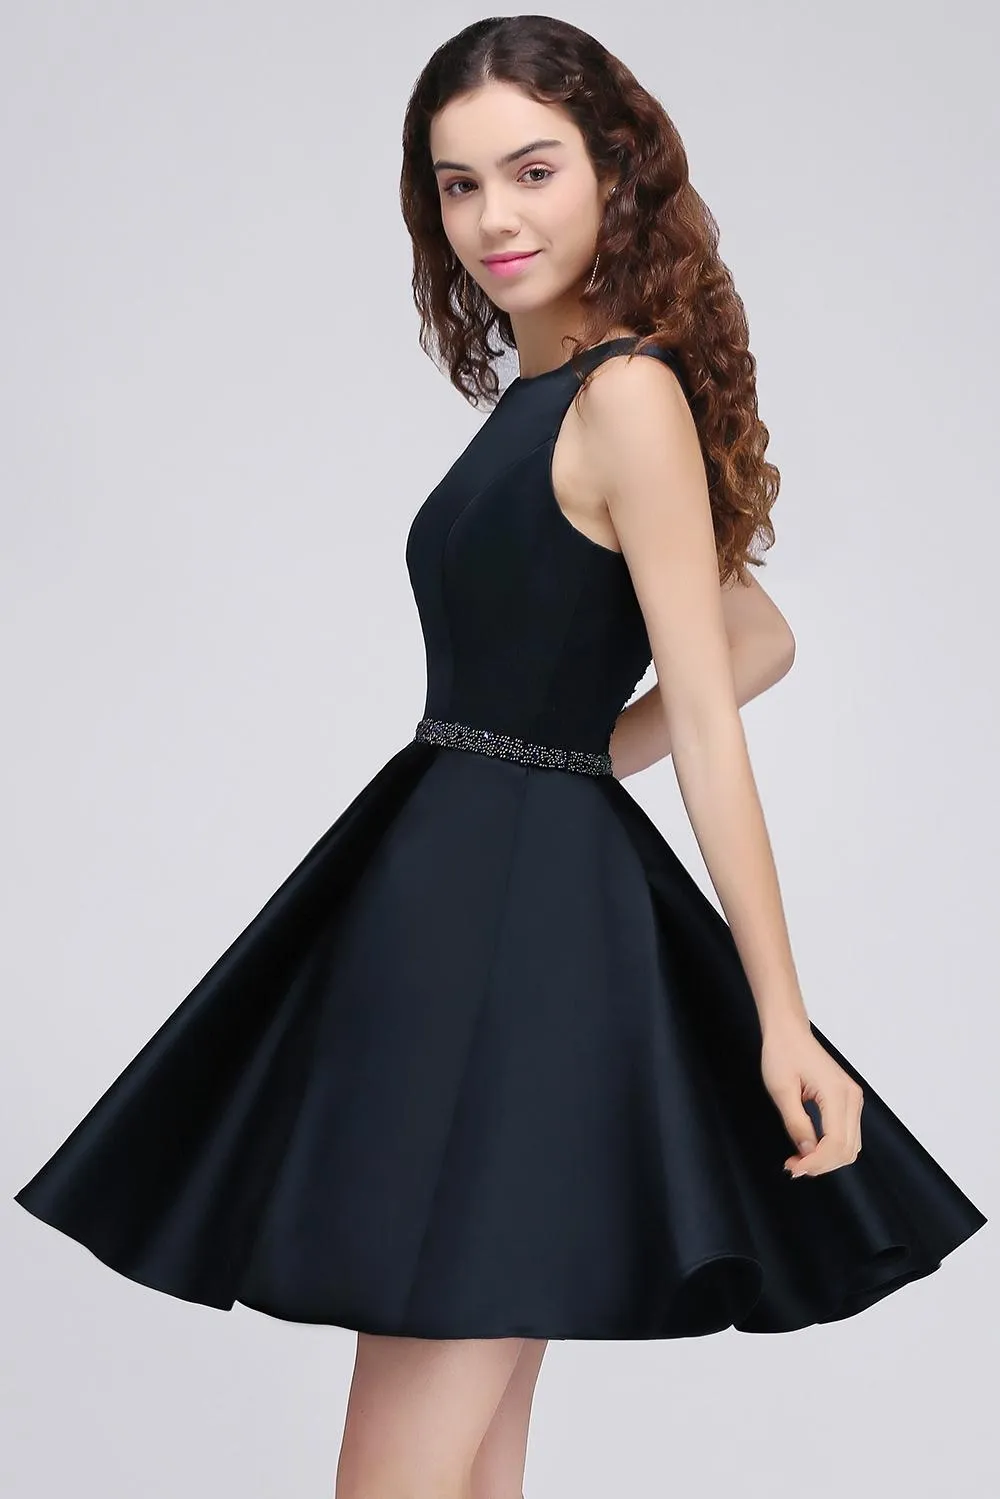 Nowe gorące ciemne granatowe sukienki Homecoming Sukienki mini krótkie błyszczące impreza z koralikami zużycie sukienek ukończenia studiów hy209